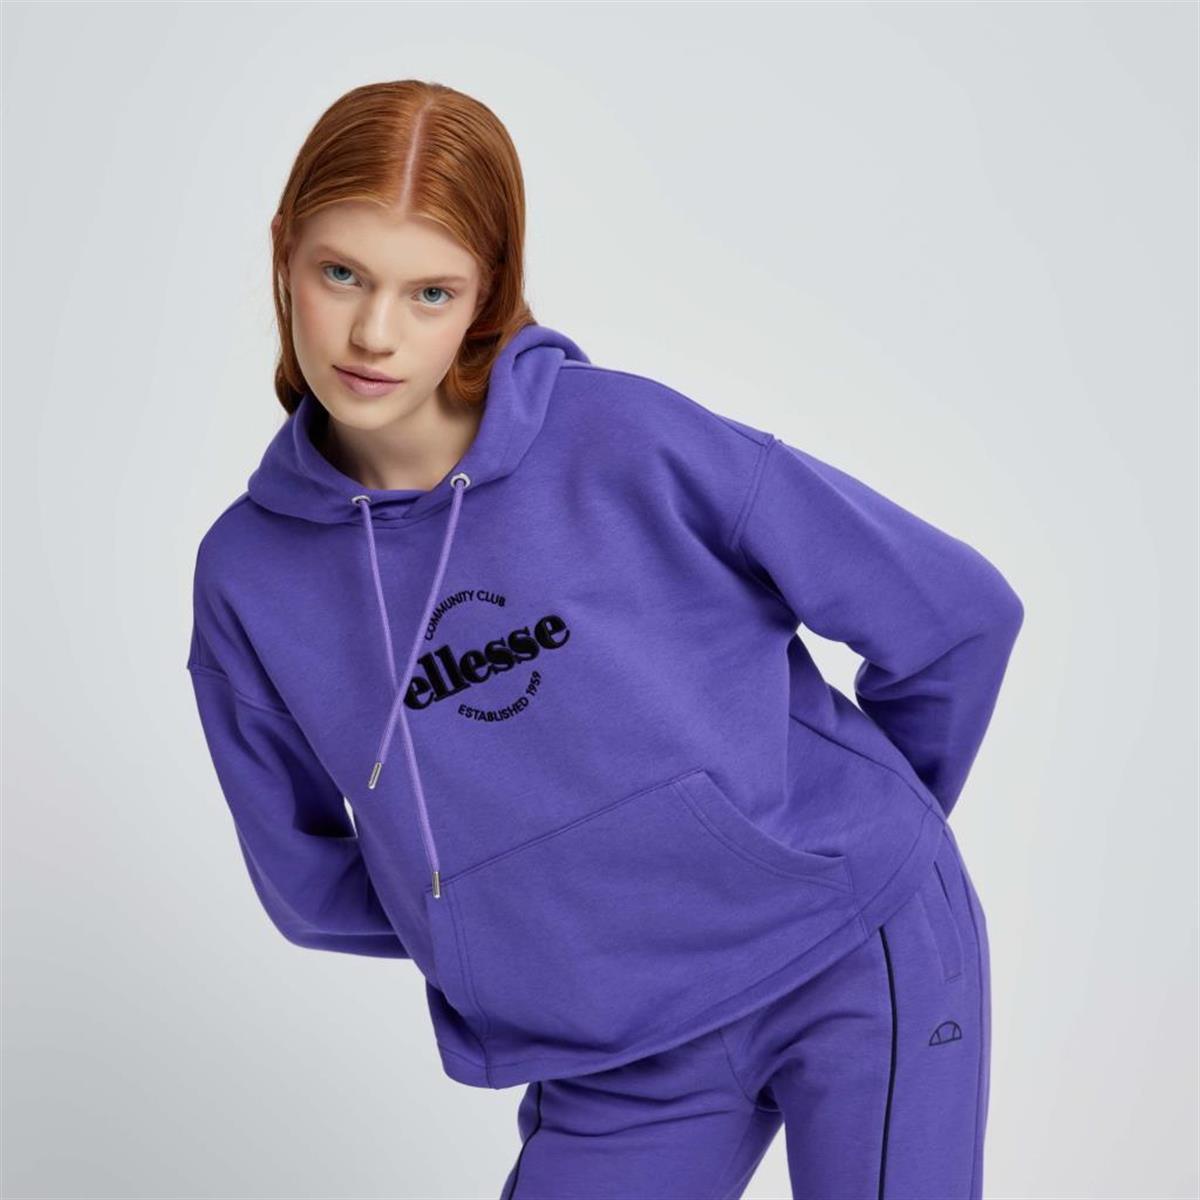 Kadın sweatshirt Modelleri ve Fiyatları | Bee.com.tr